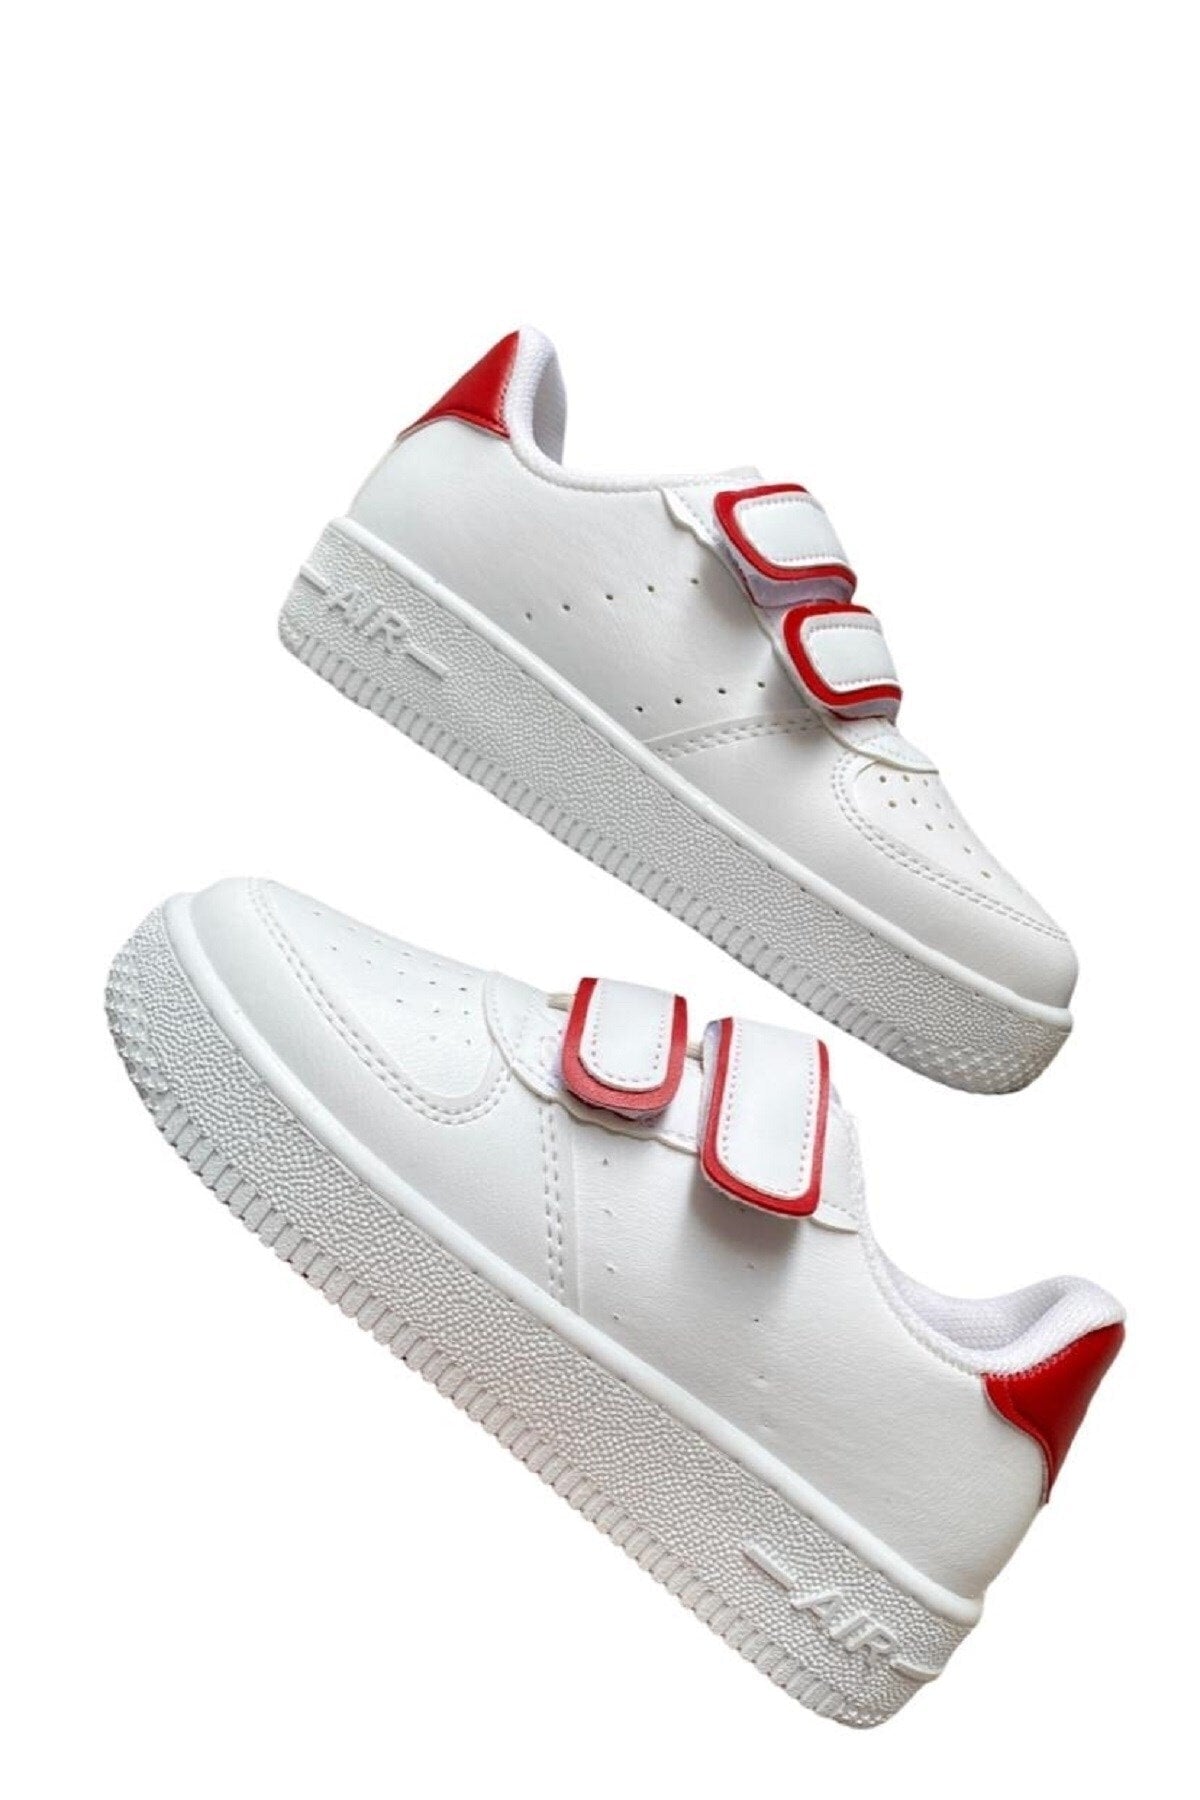 Unisex Girls Boys Velcro Sneakers Sneaker - White Red